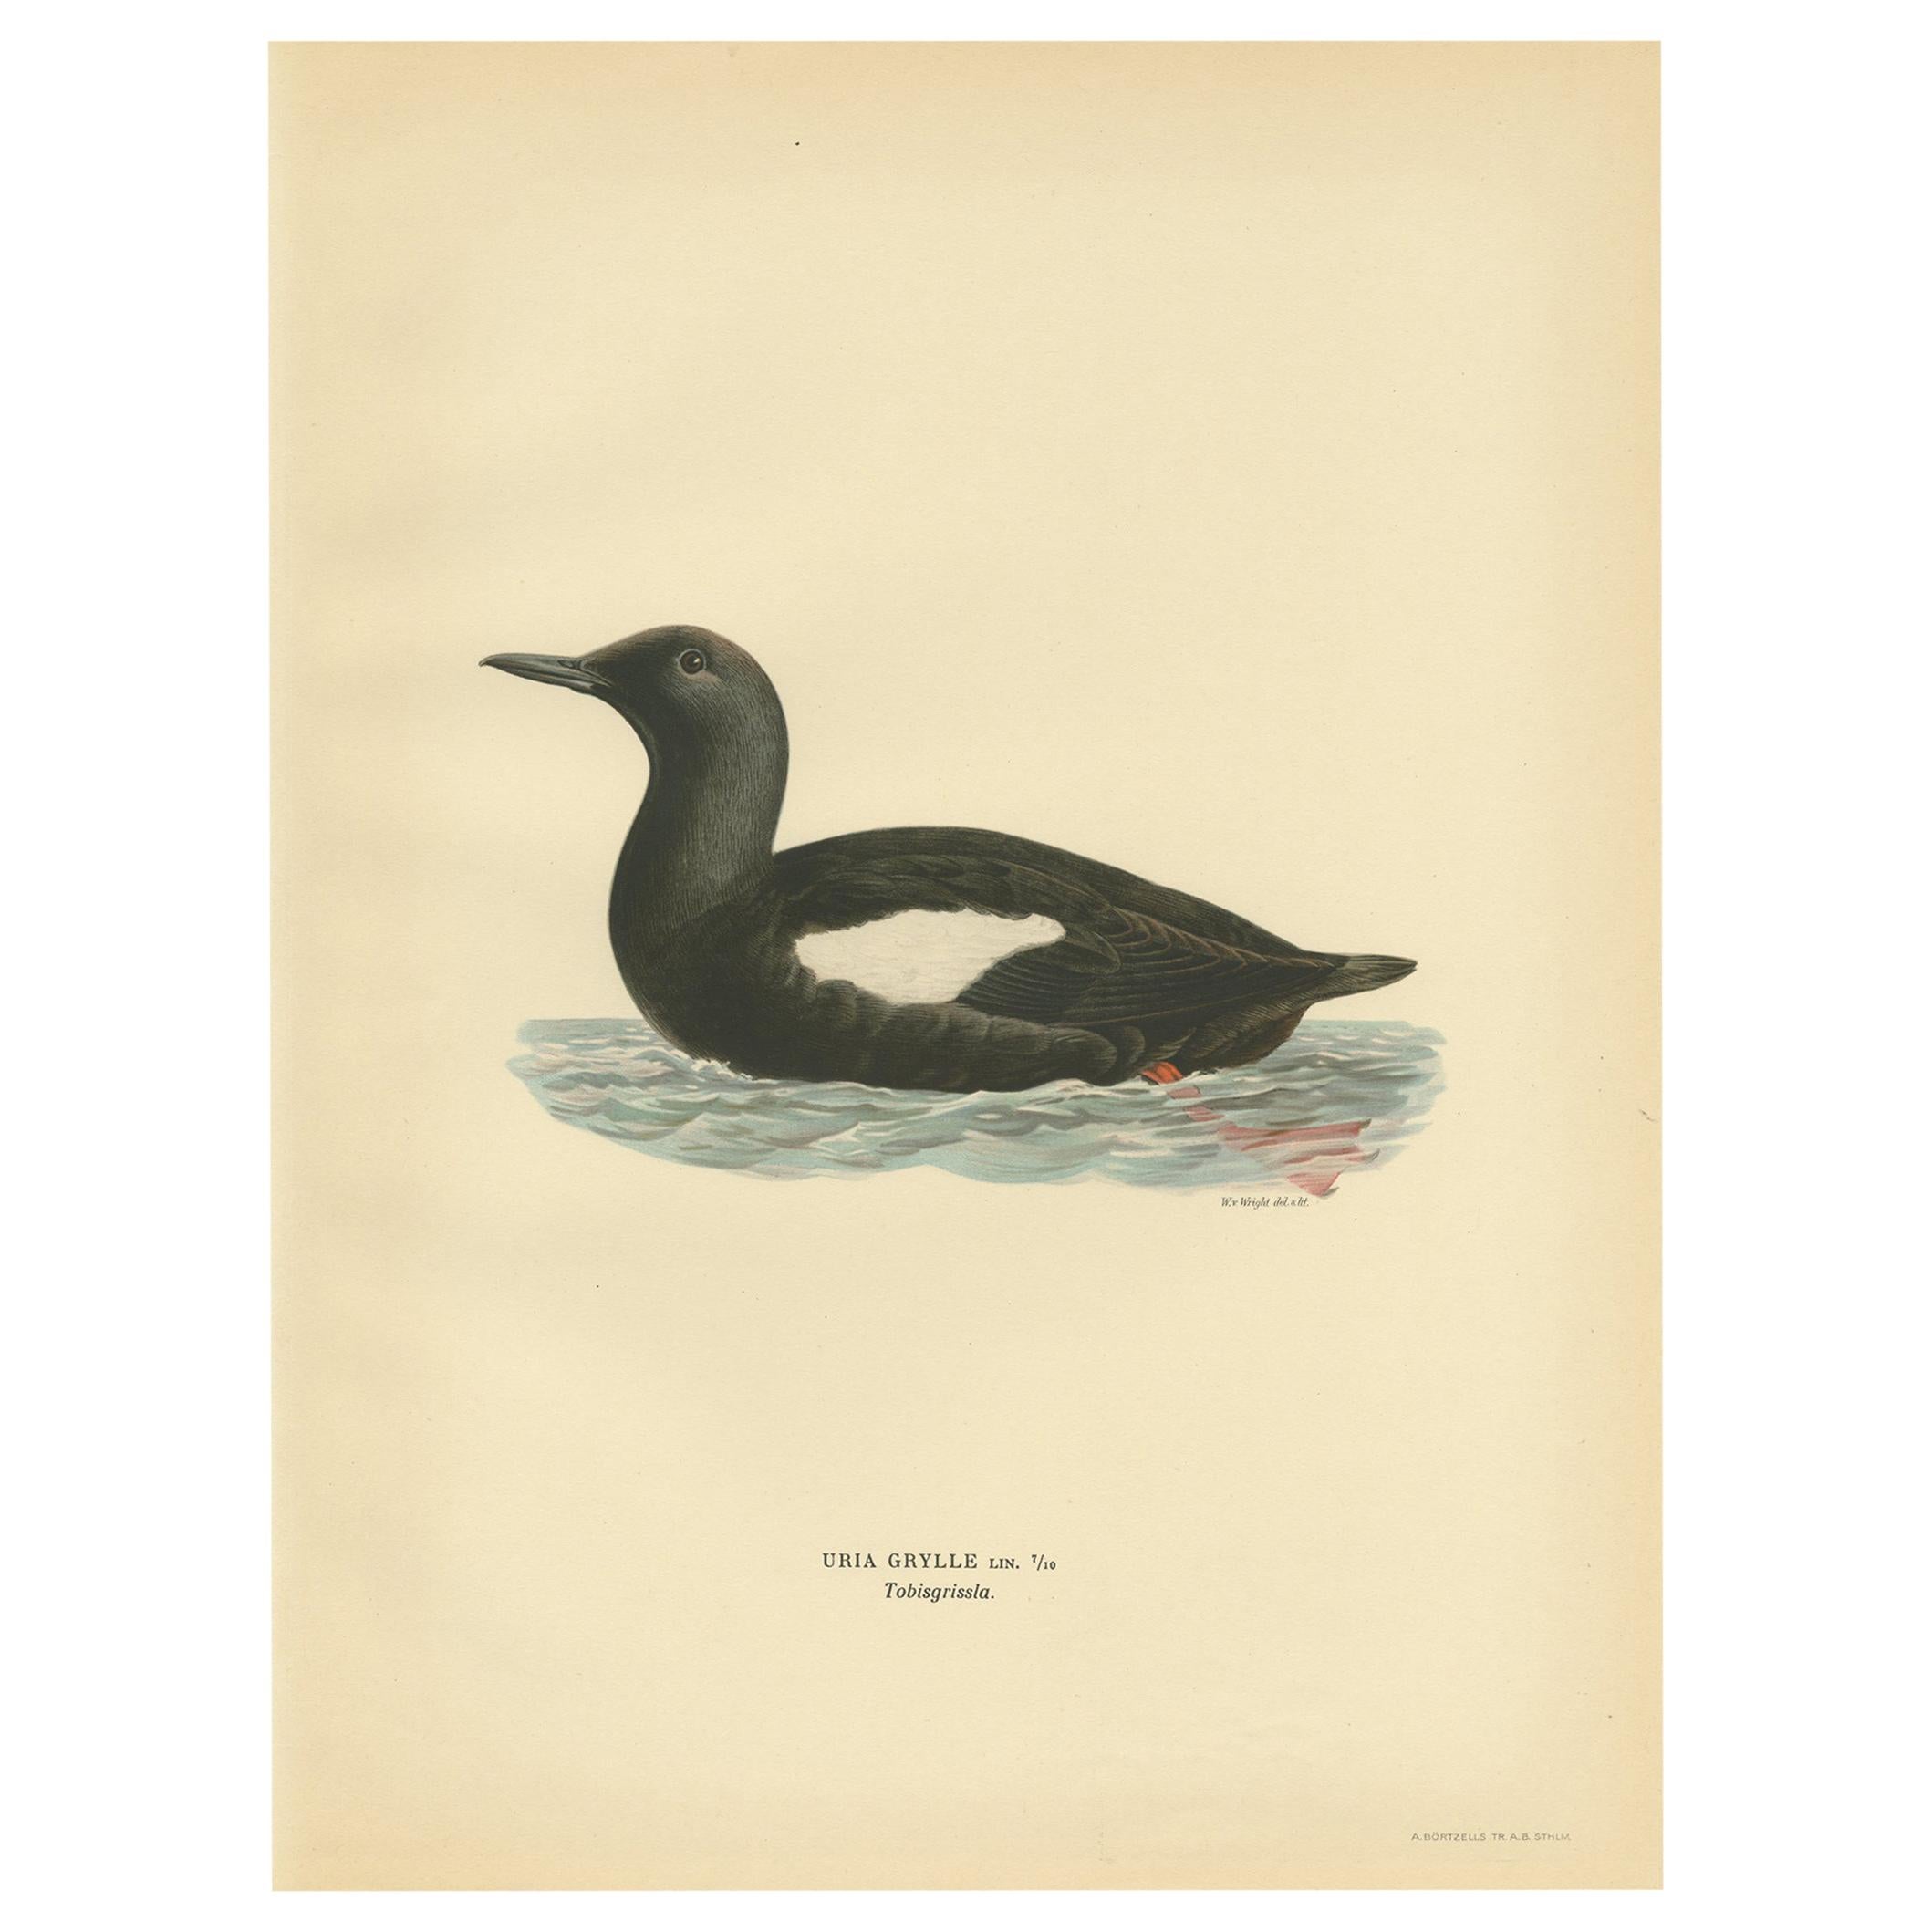 Antique Bird Print of the Black Guillemot by Von Wright, 1929